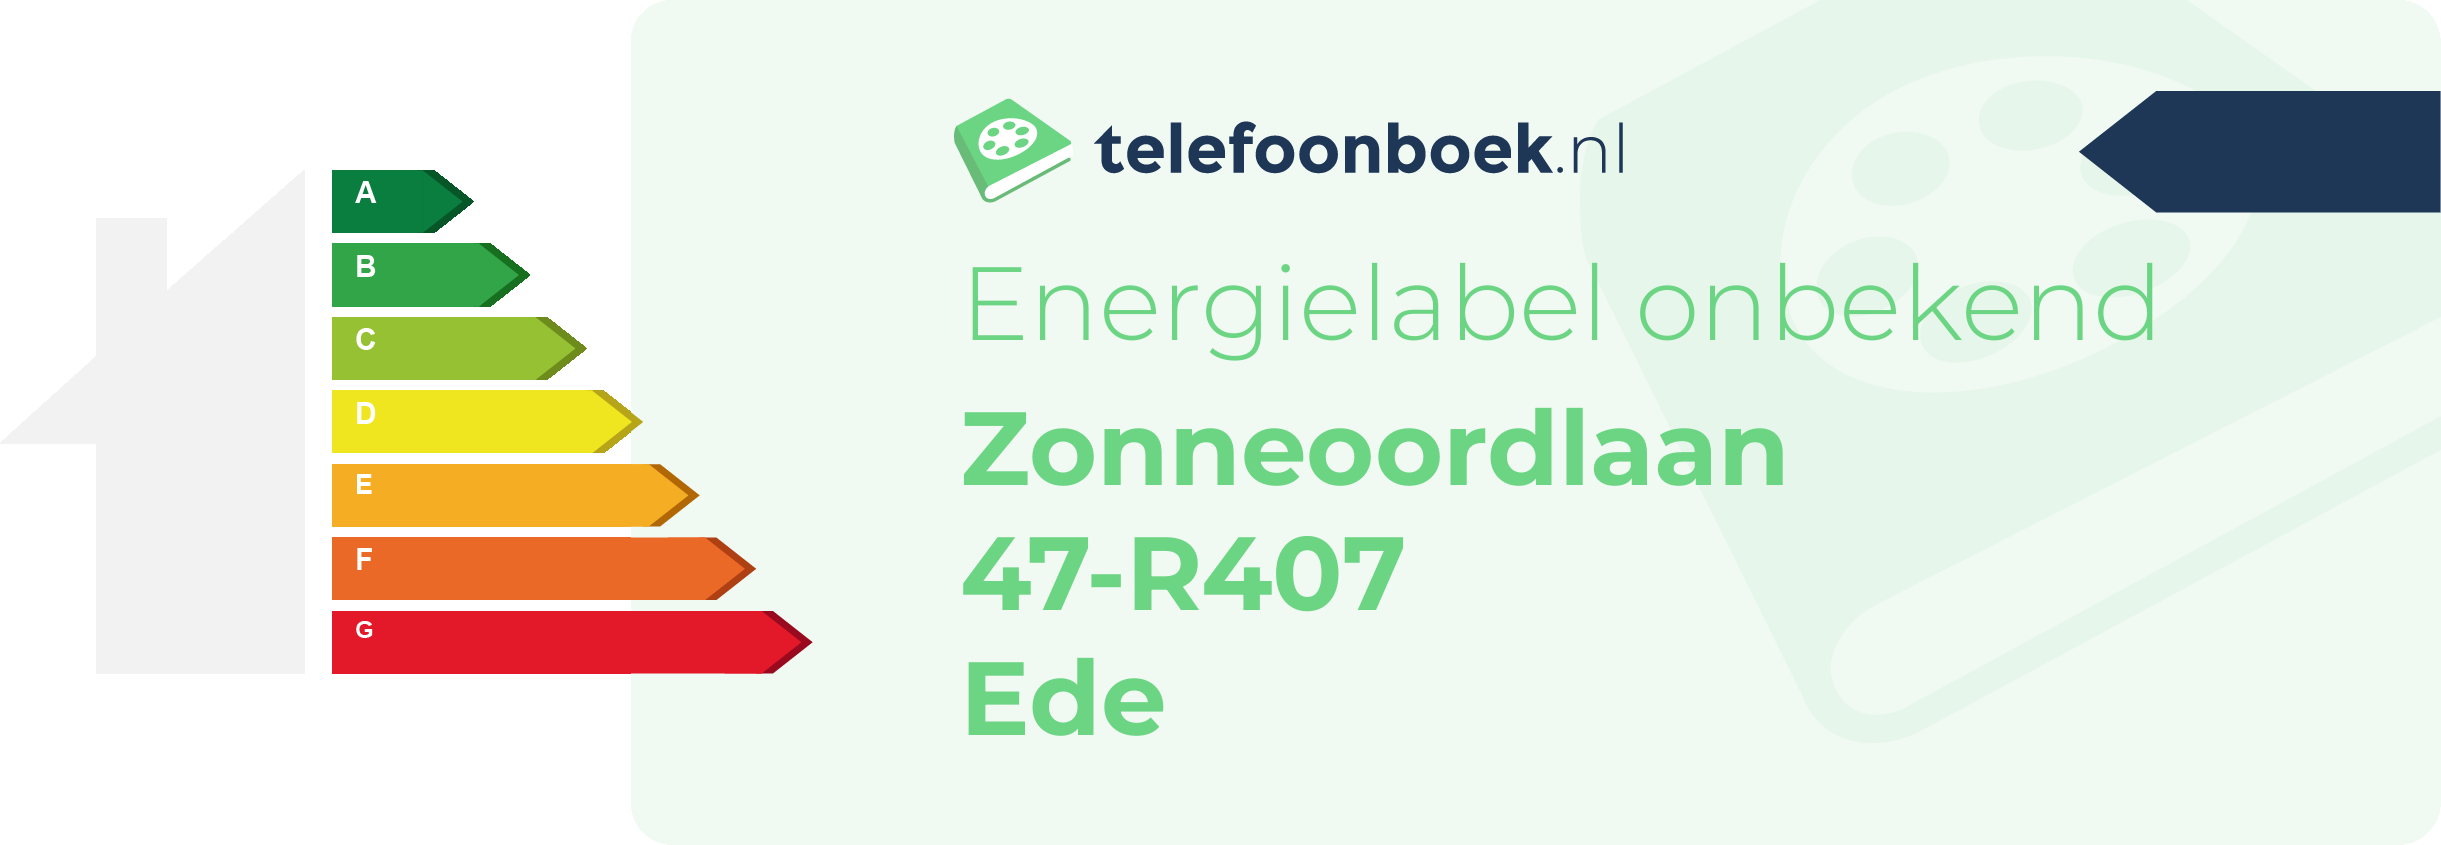 Energielabel Zonneoordlaan 47-R407 Ede